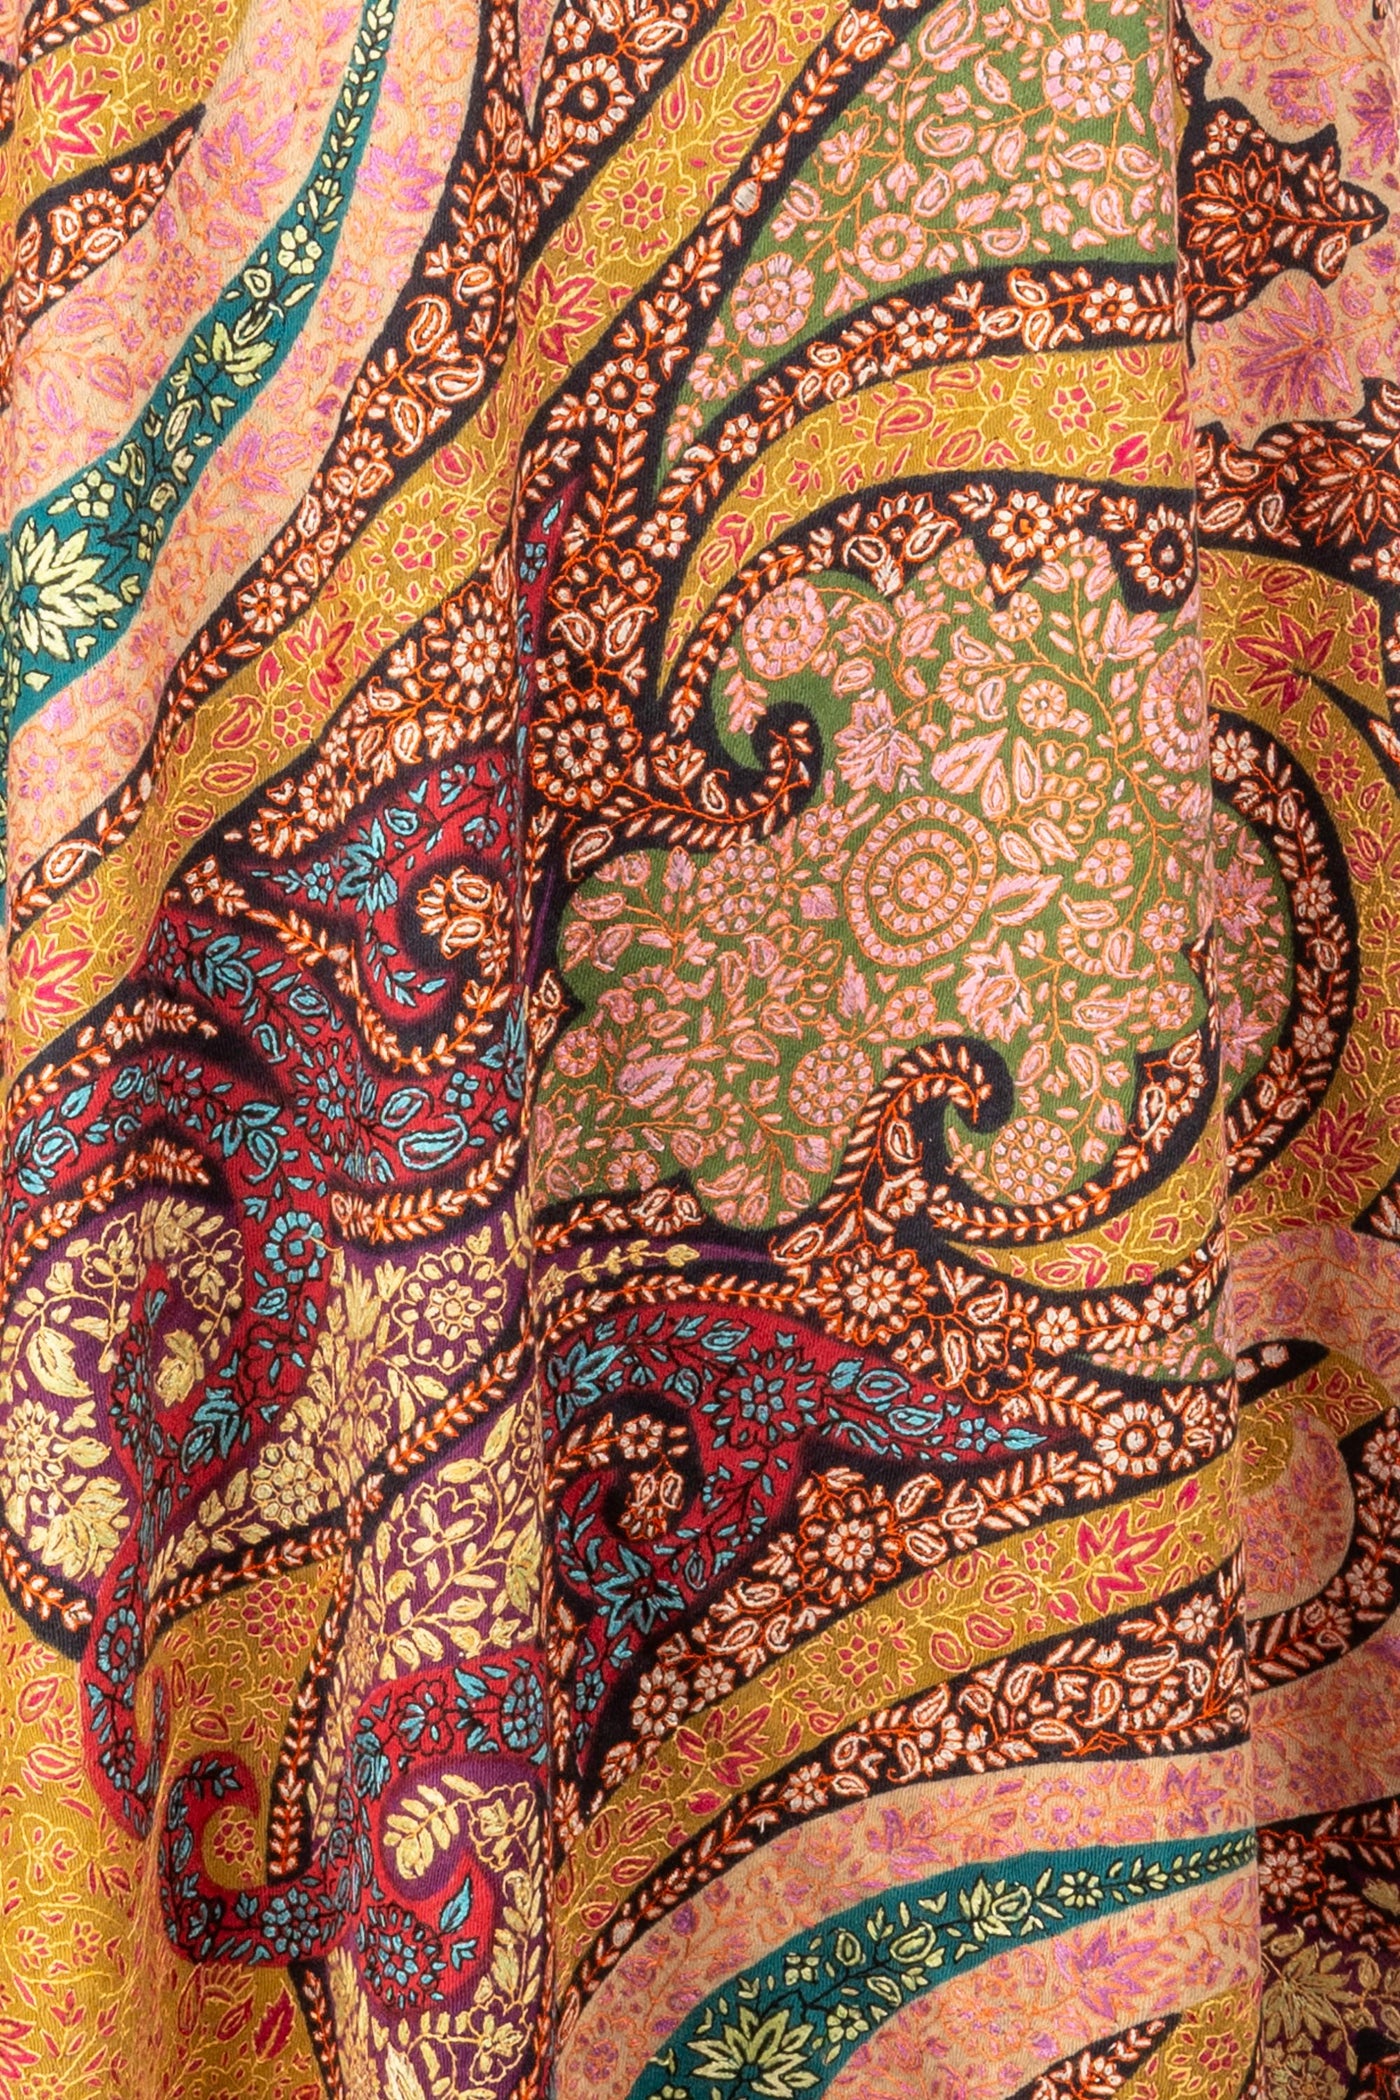 Gulbahar Roshanara Pashmina Kalamkari Shawl with Sozni Hand Embroidery